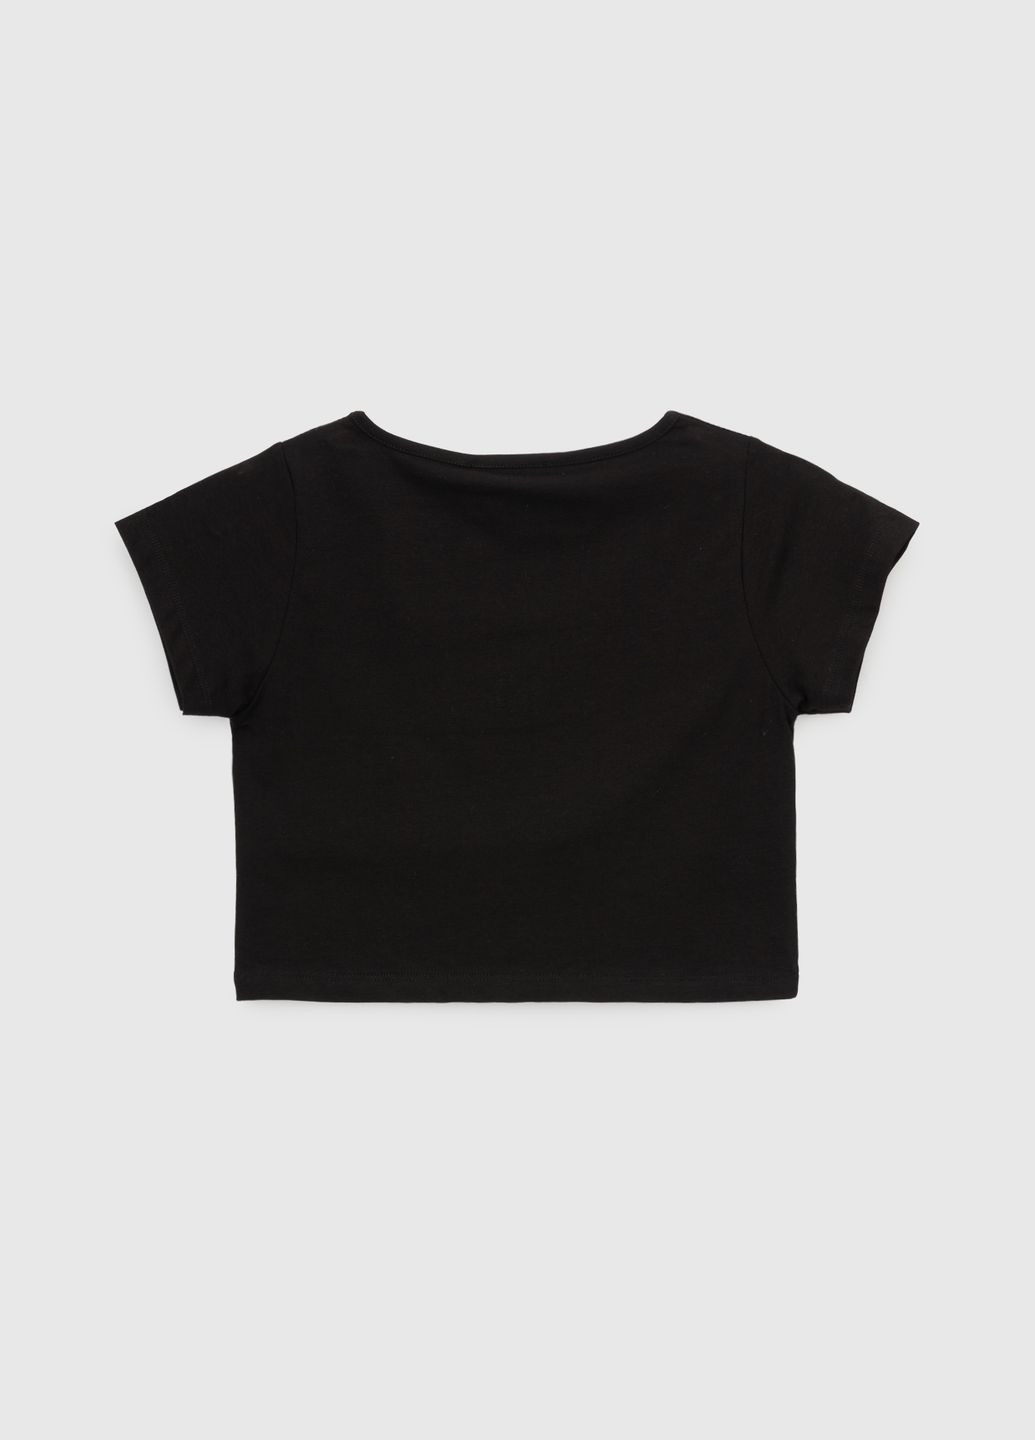 Черная летняя футболка Viollen